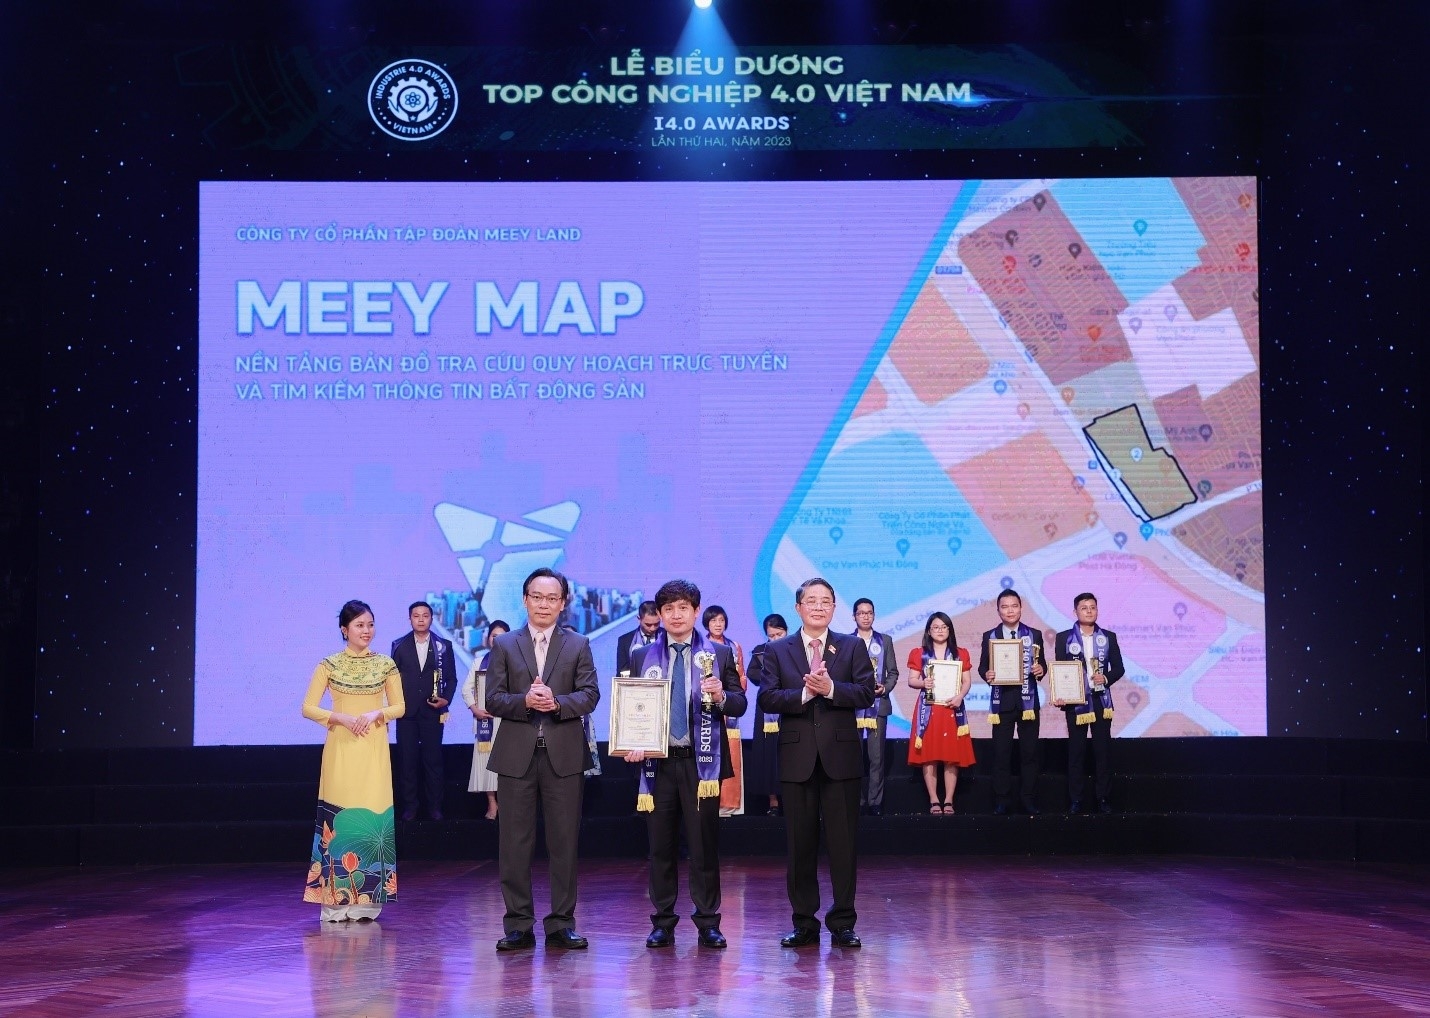 Meey Map - Nền tảng kiểm tra quy hoạch xây dựng nhanh chóng và tin cậy.